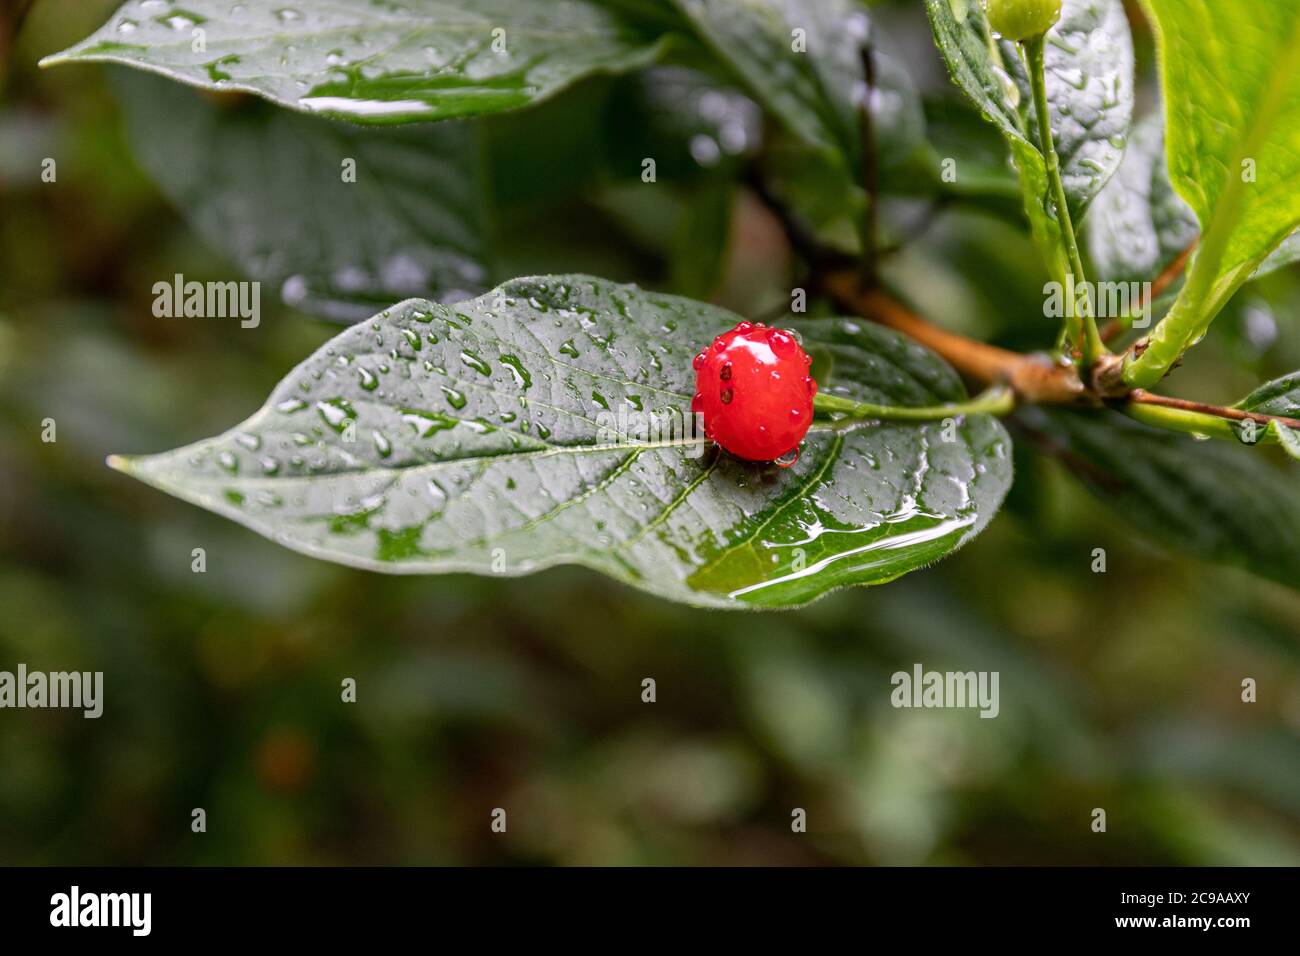 Nahaufnahme der roten Frucht der Beere von Lonicera alpigena, auch bekannt als alpines Geißblatt, an einem regnerischen Tag Stockfoto